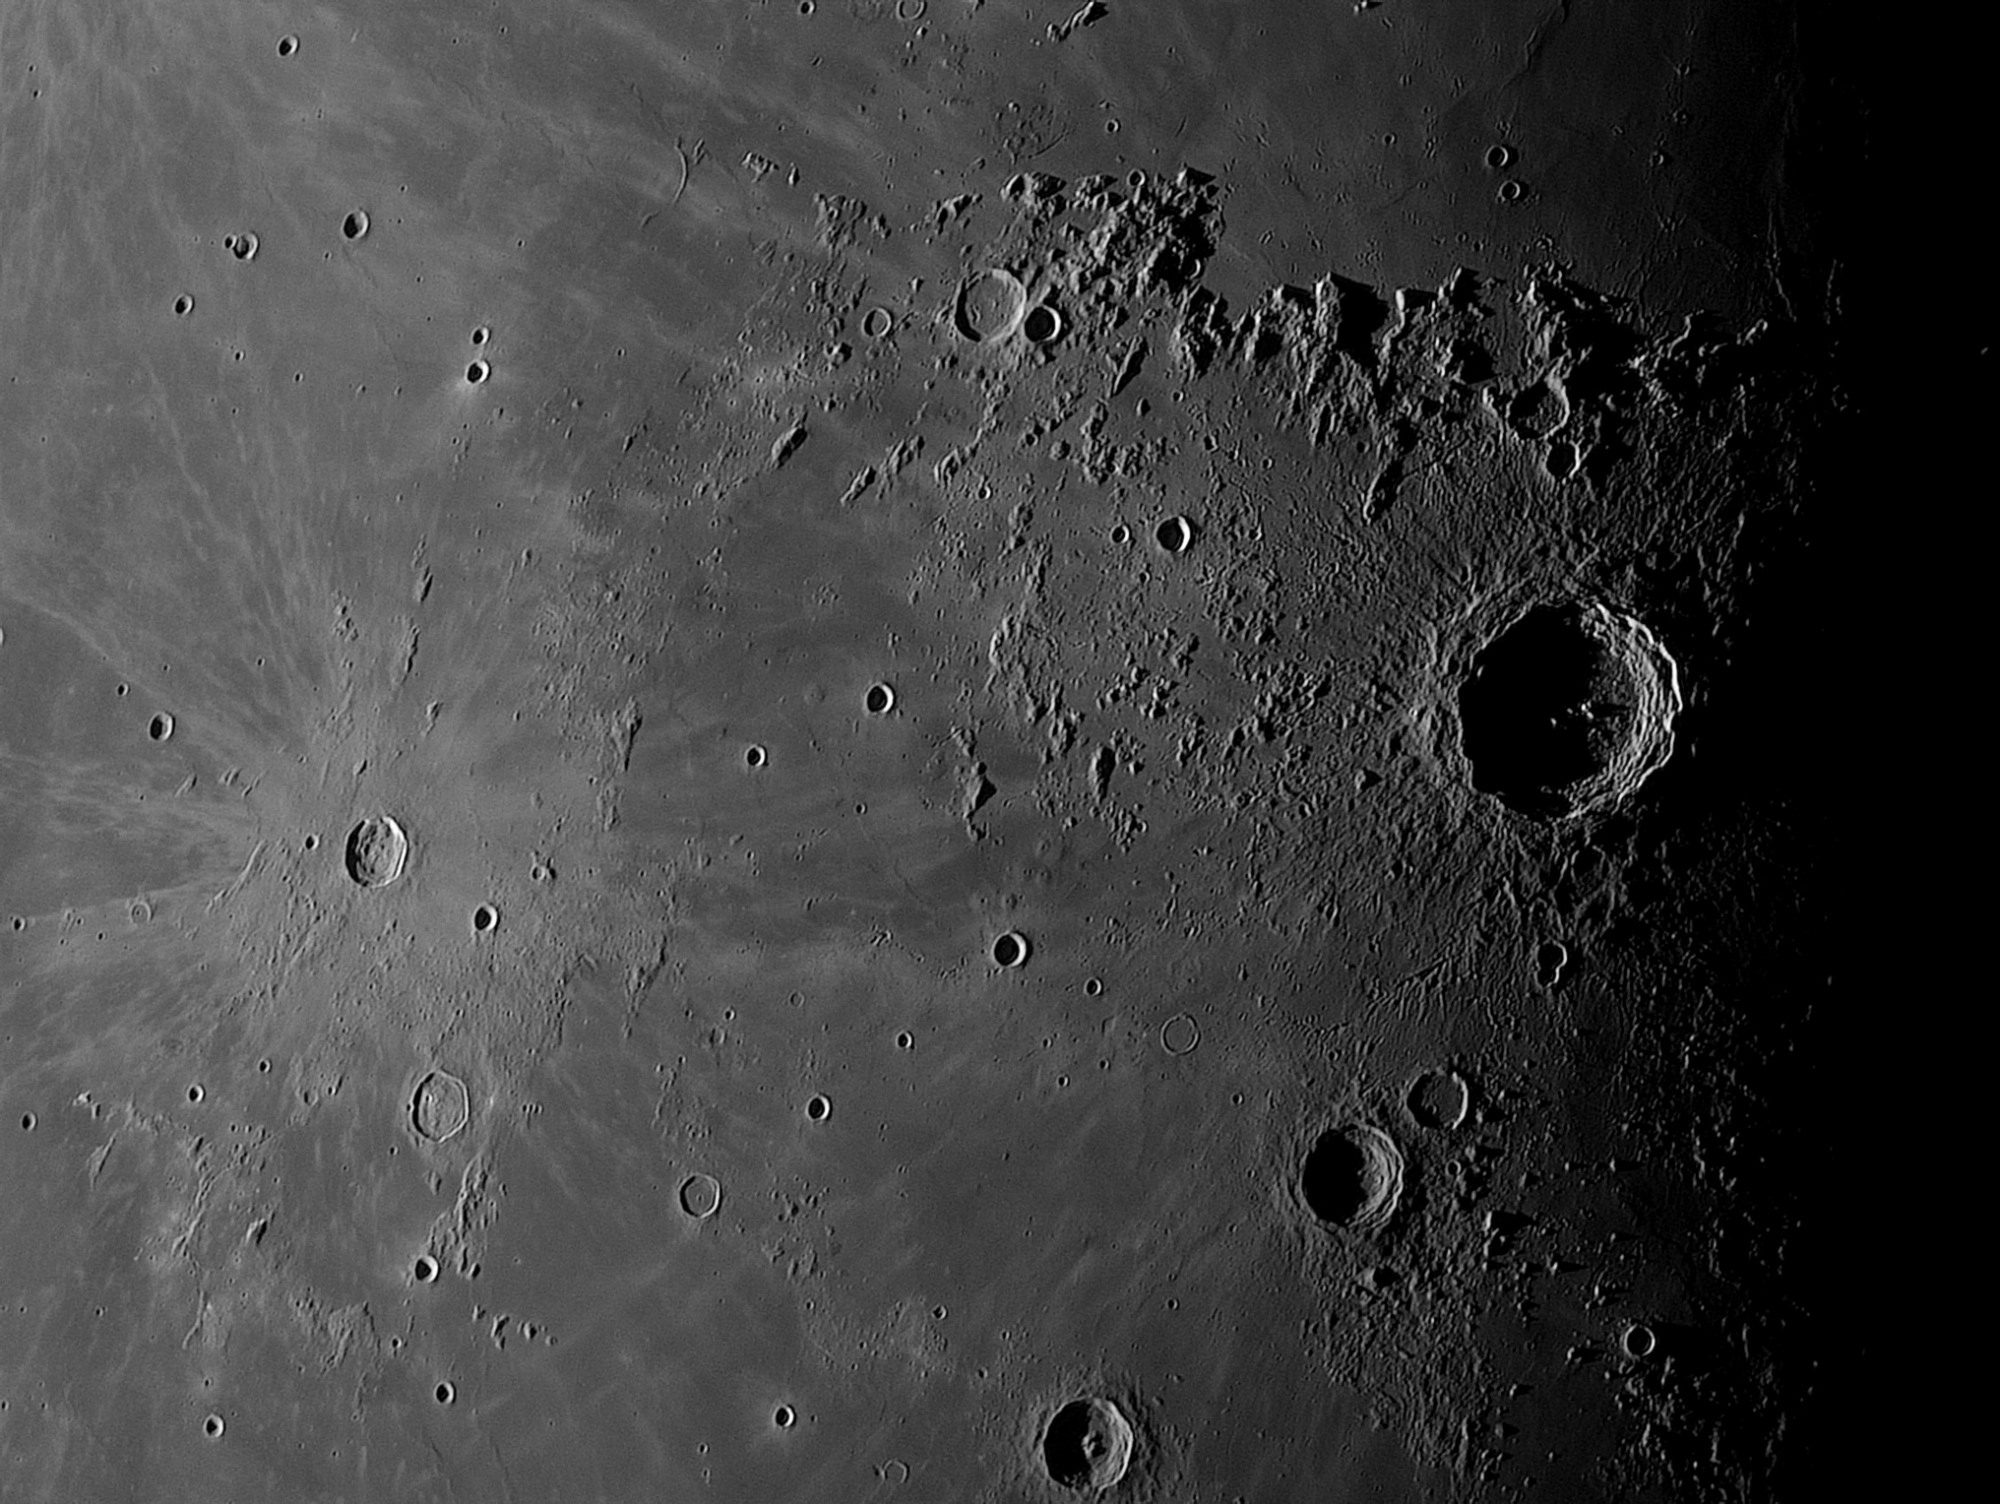 Lune-20210930_Copernic-ba-07-AS.thumb.jpg.961e38a7e3871dae3517c1a1b0800cb5.jpg